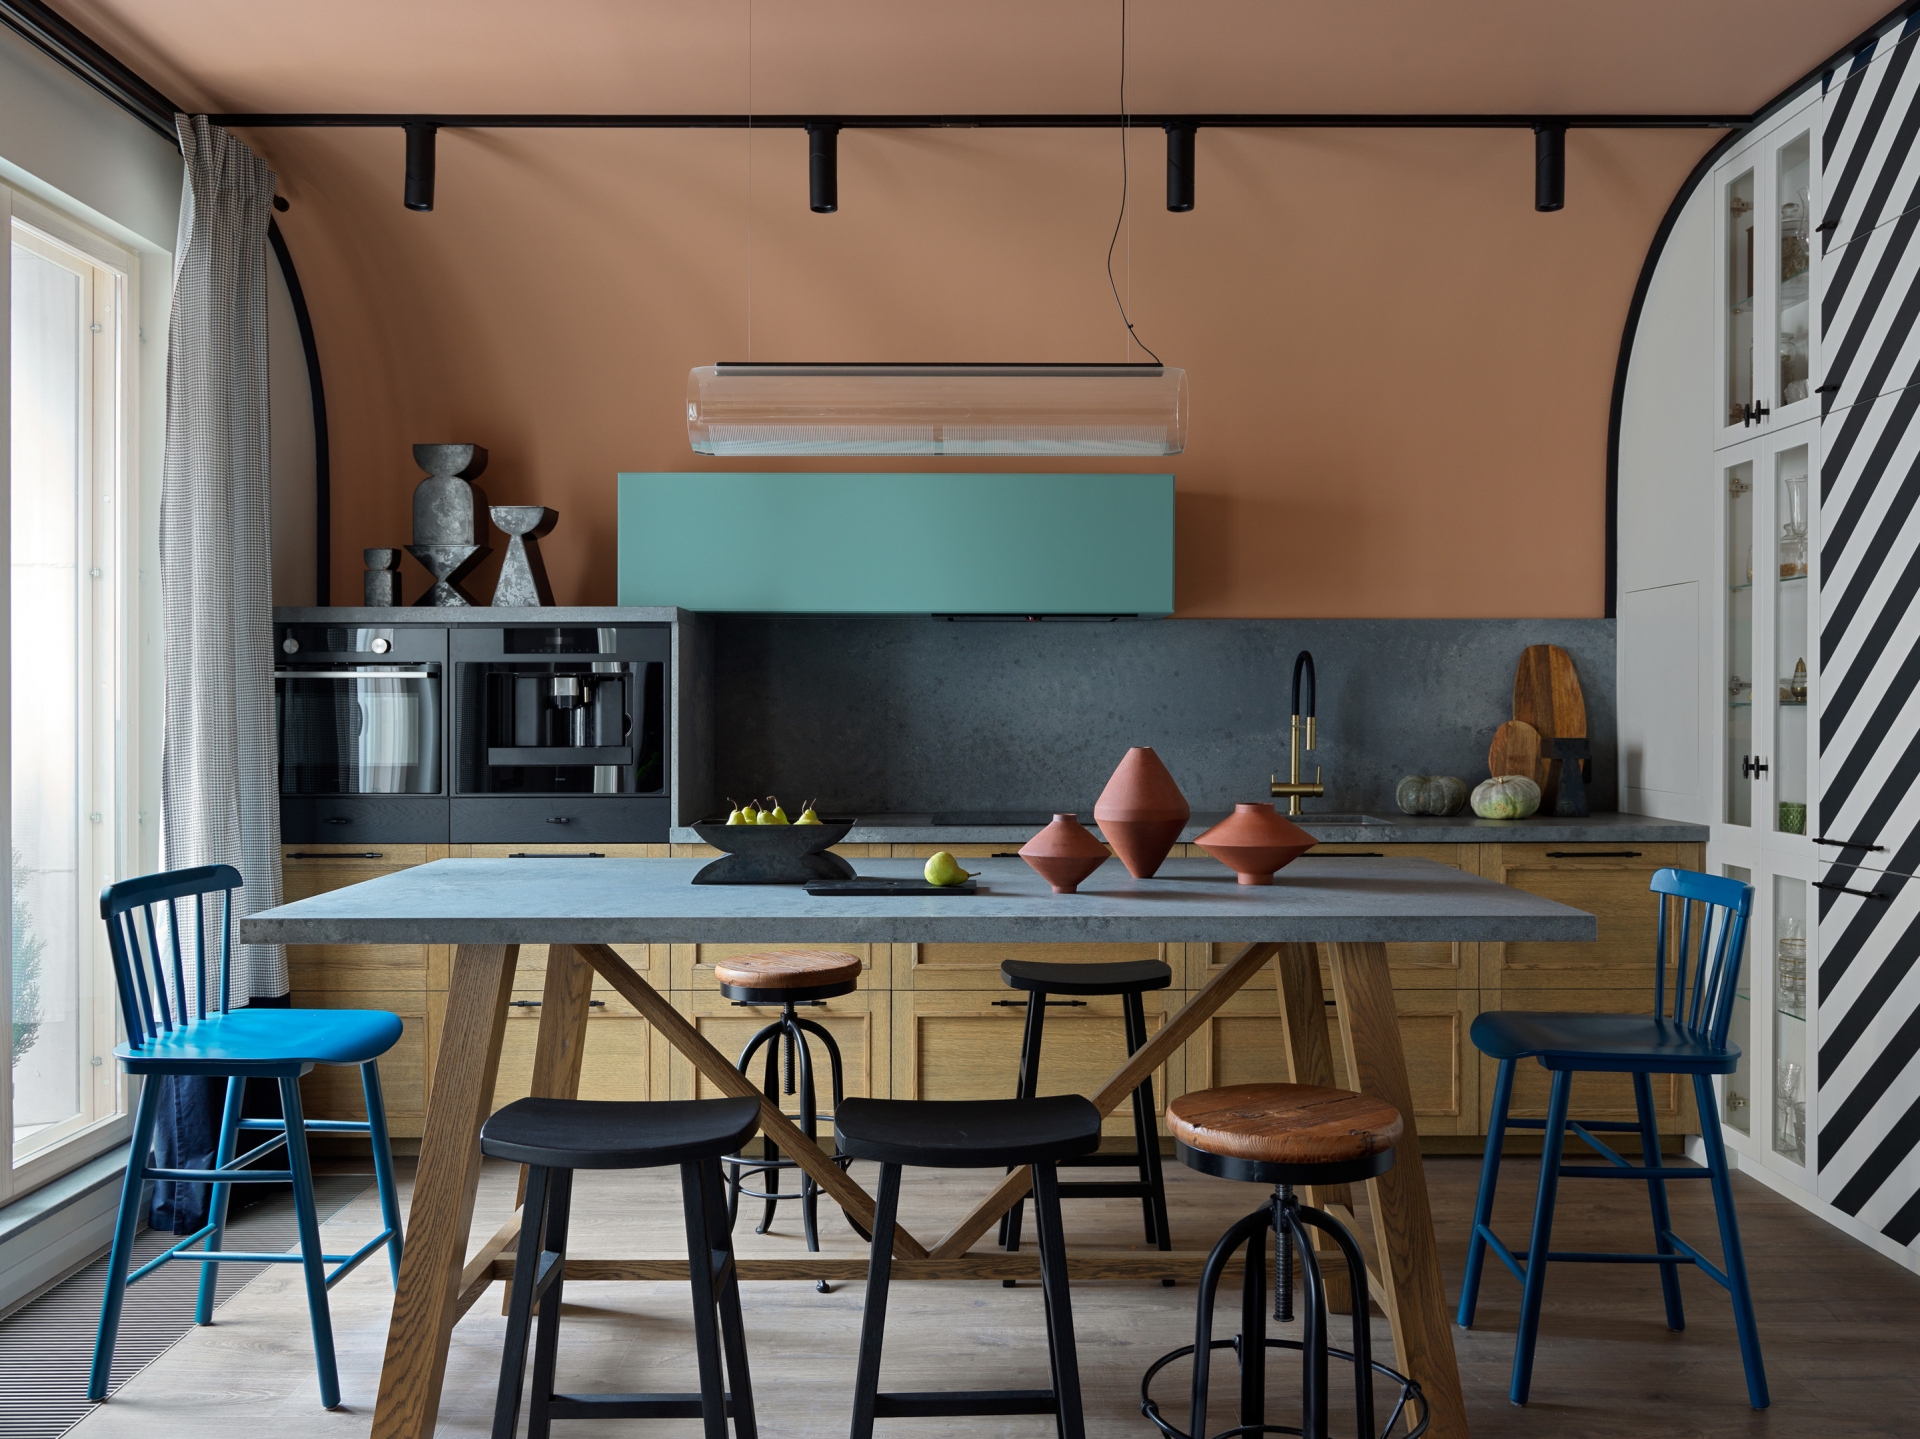 Phòng khách, bếp và khu vực ăn uống được thiết kế mở, kết hợp với bếp chữ I càng thêm tiết kiệm không gian. Căn bếp tiện nghi với thiết bị hiện đại, bố trí gọn gàng, sắc màu như chia thành từng bố cục: Hồng - xanh - xám - màu gỗ tự nhiên.